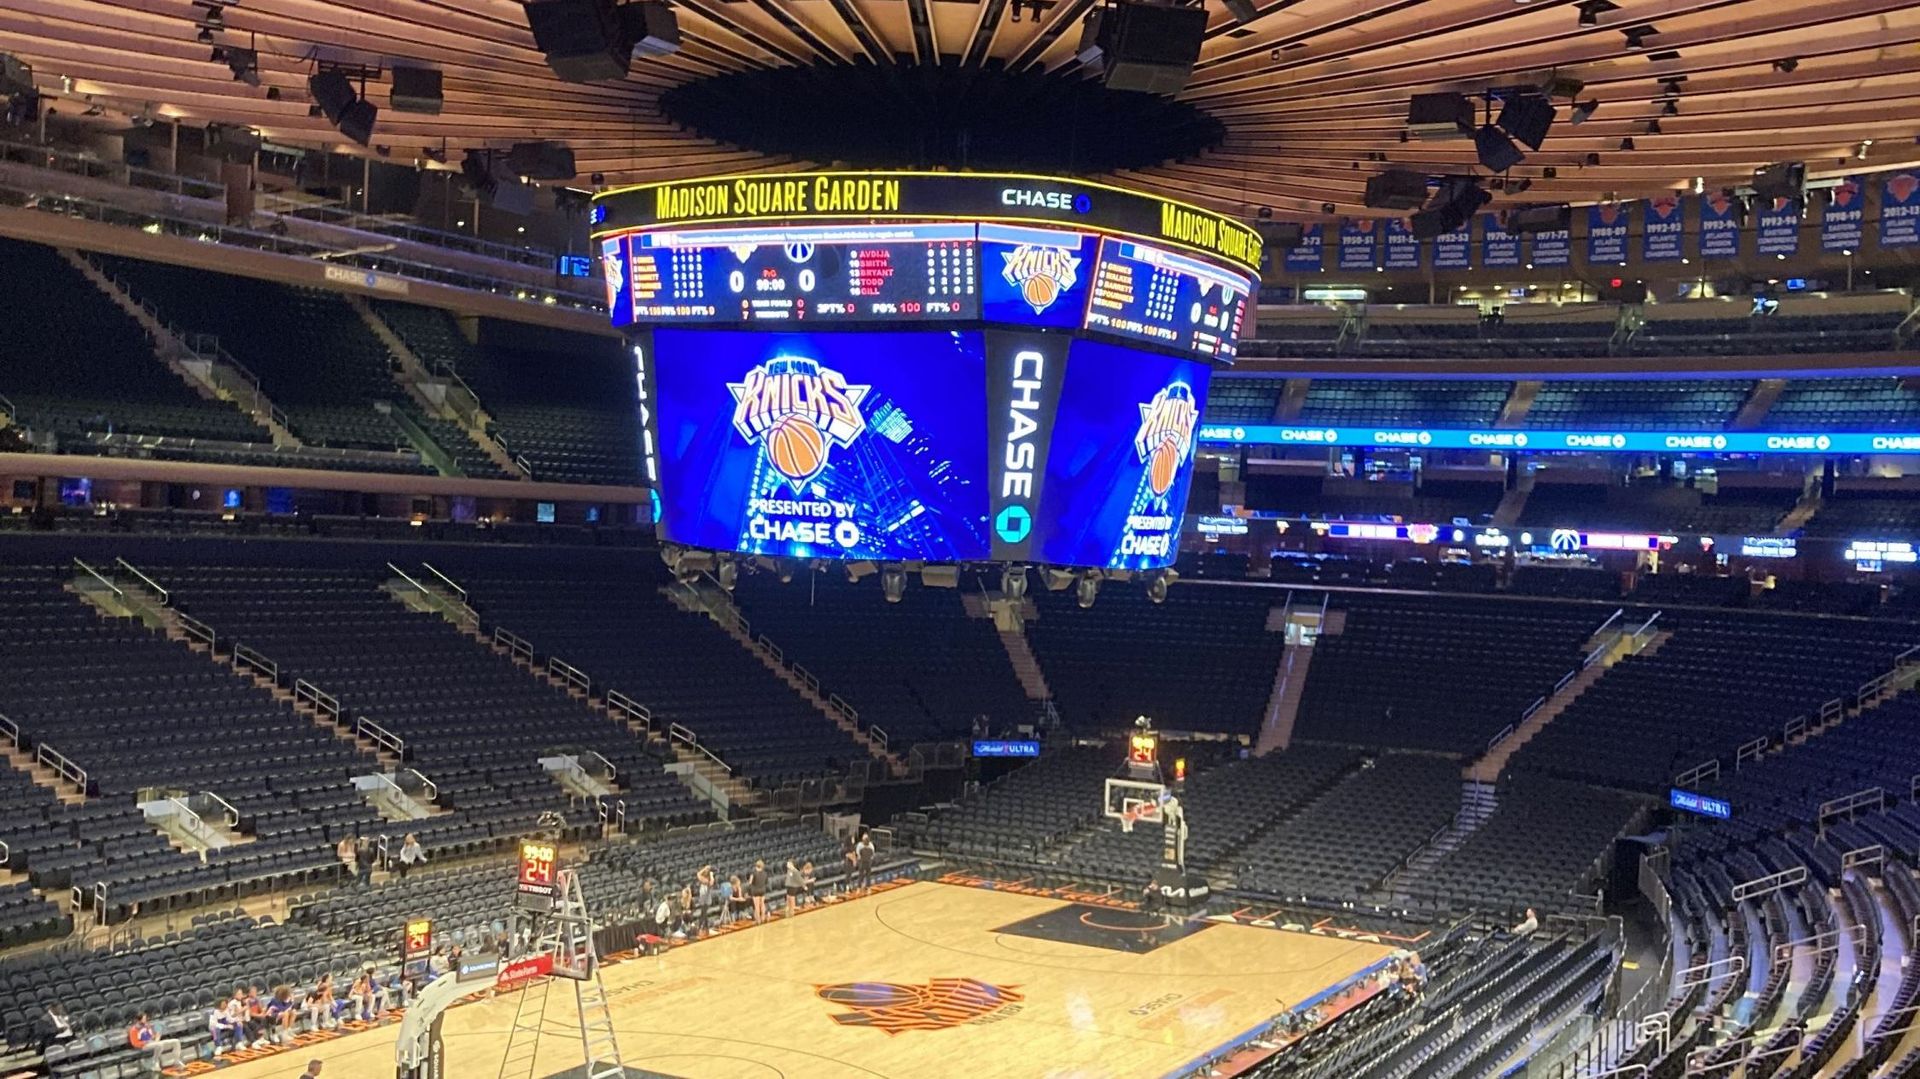 La salle du Madison Square Garden qui s'apprête à recevoir un match des Knicks, équipe de basketball new-yorkaise. 